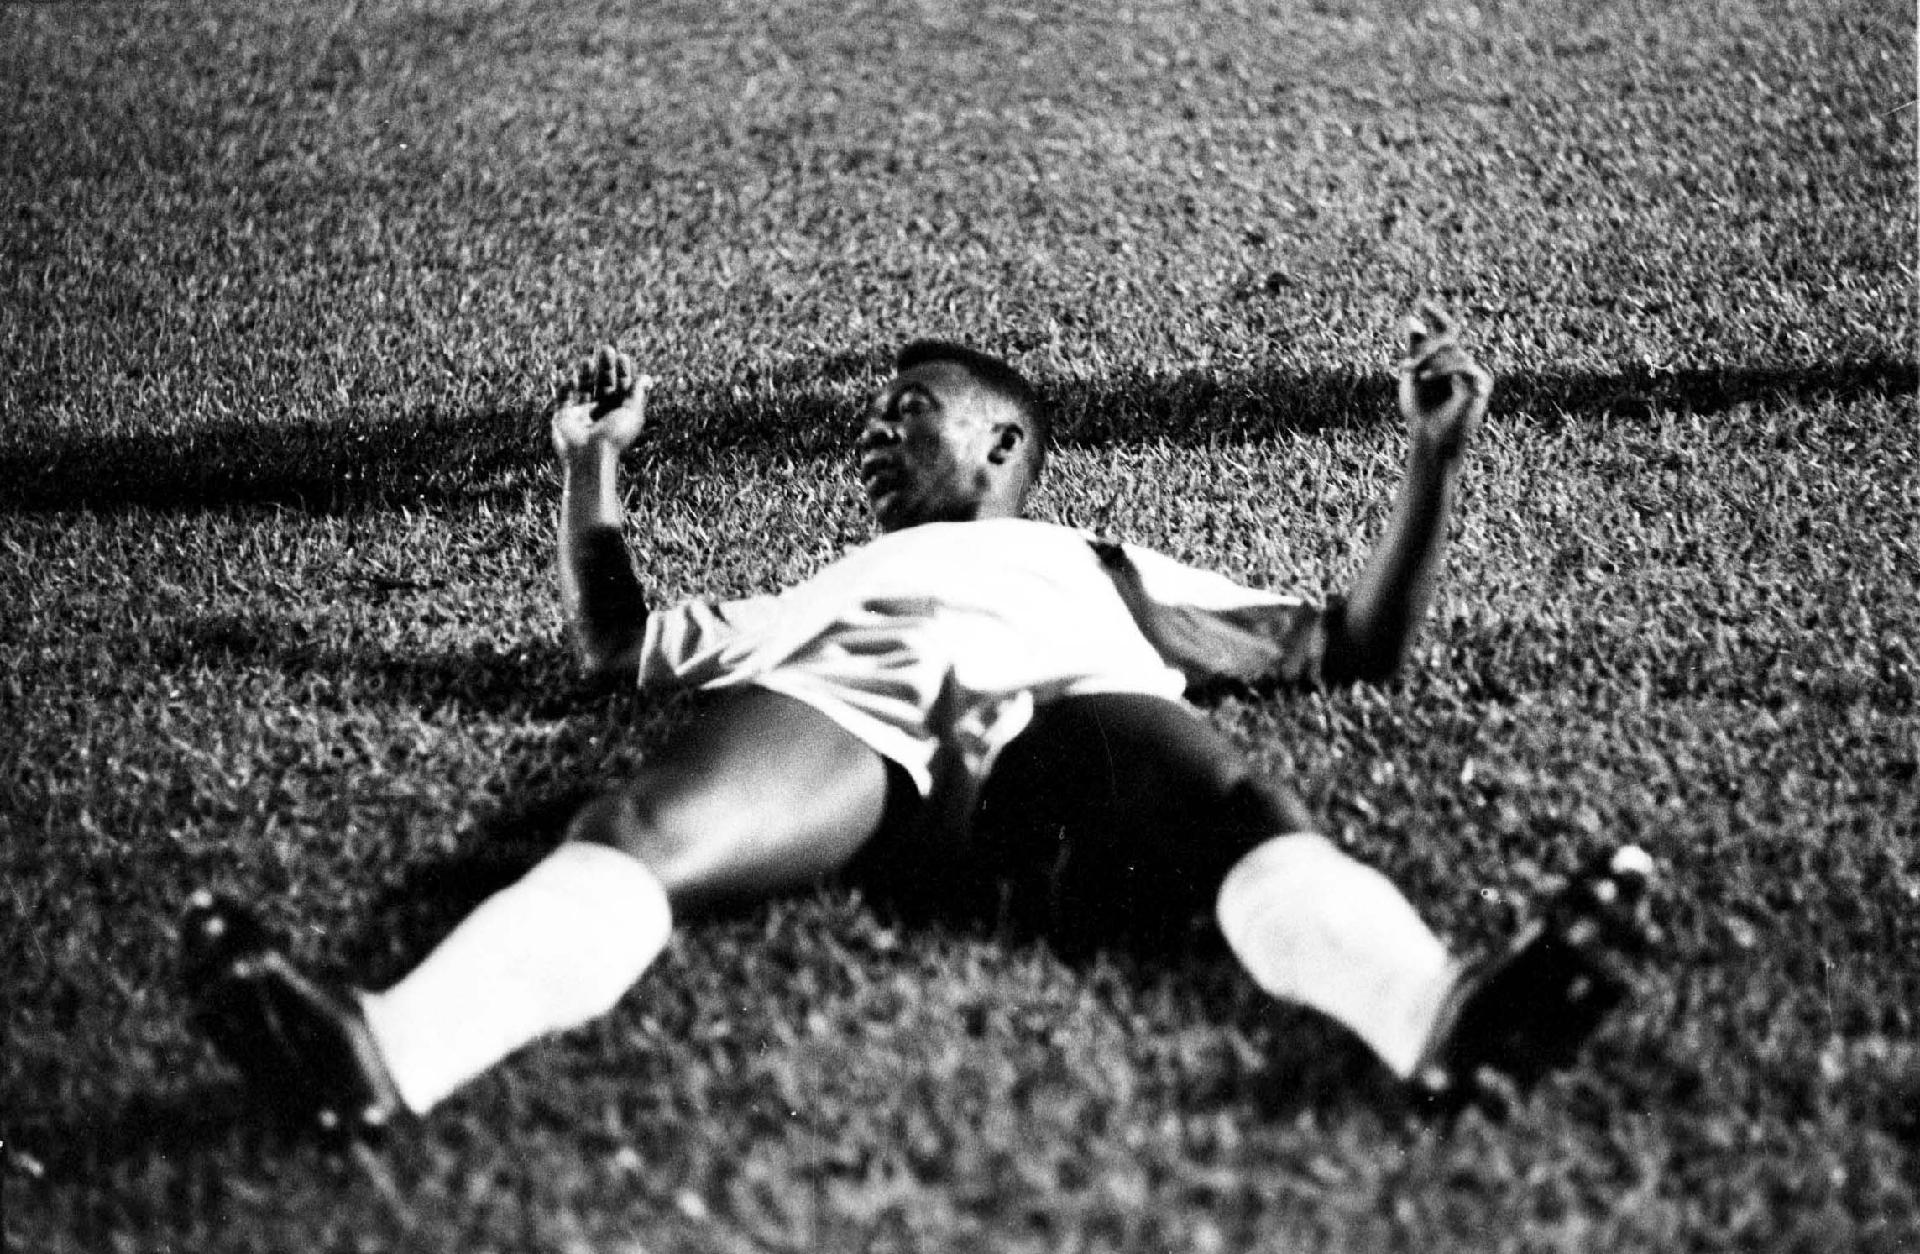 01/01/1960 - Pelé caído no gramado, jogando pelo Santos. Para que os adversários conseguissem parar o atleta, na maioria das vezes, somente com falta. - Domicio Pinheiro/Estadão Conteúdo